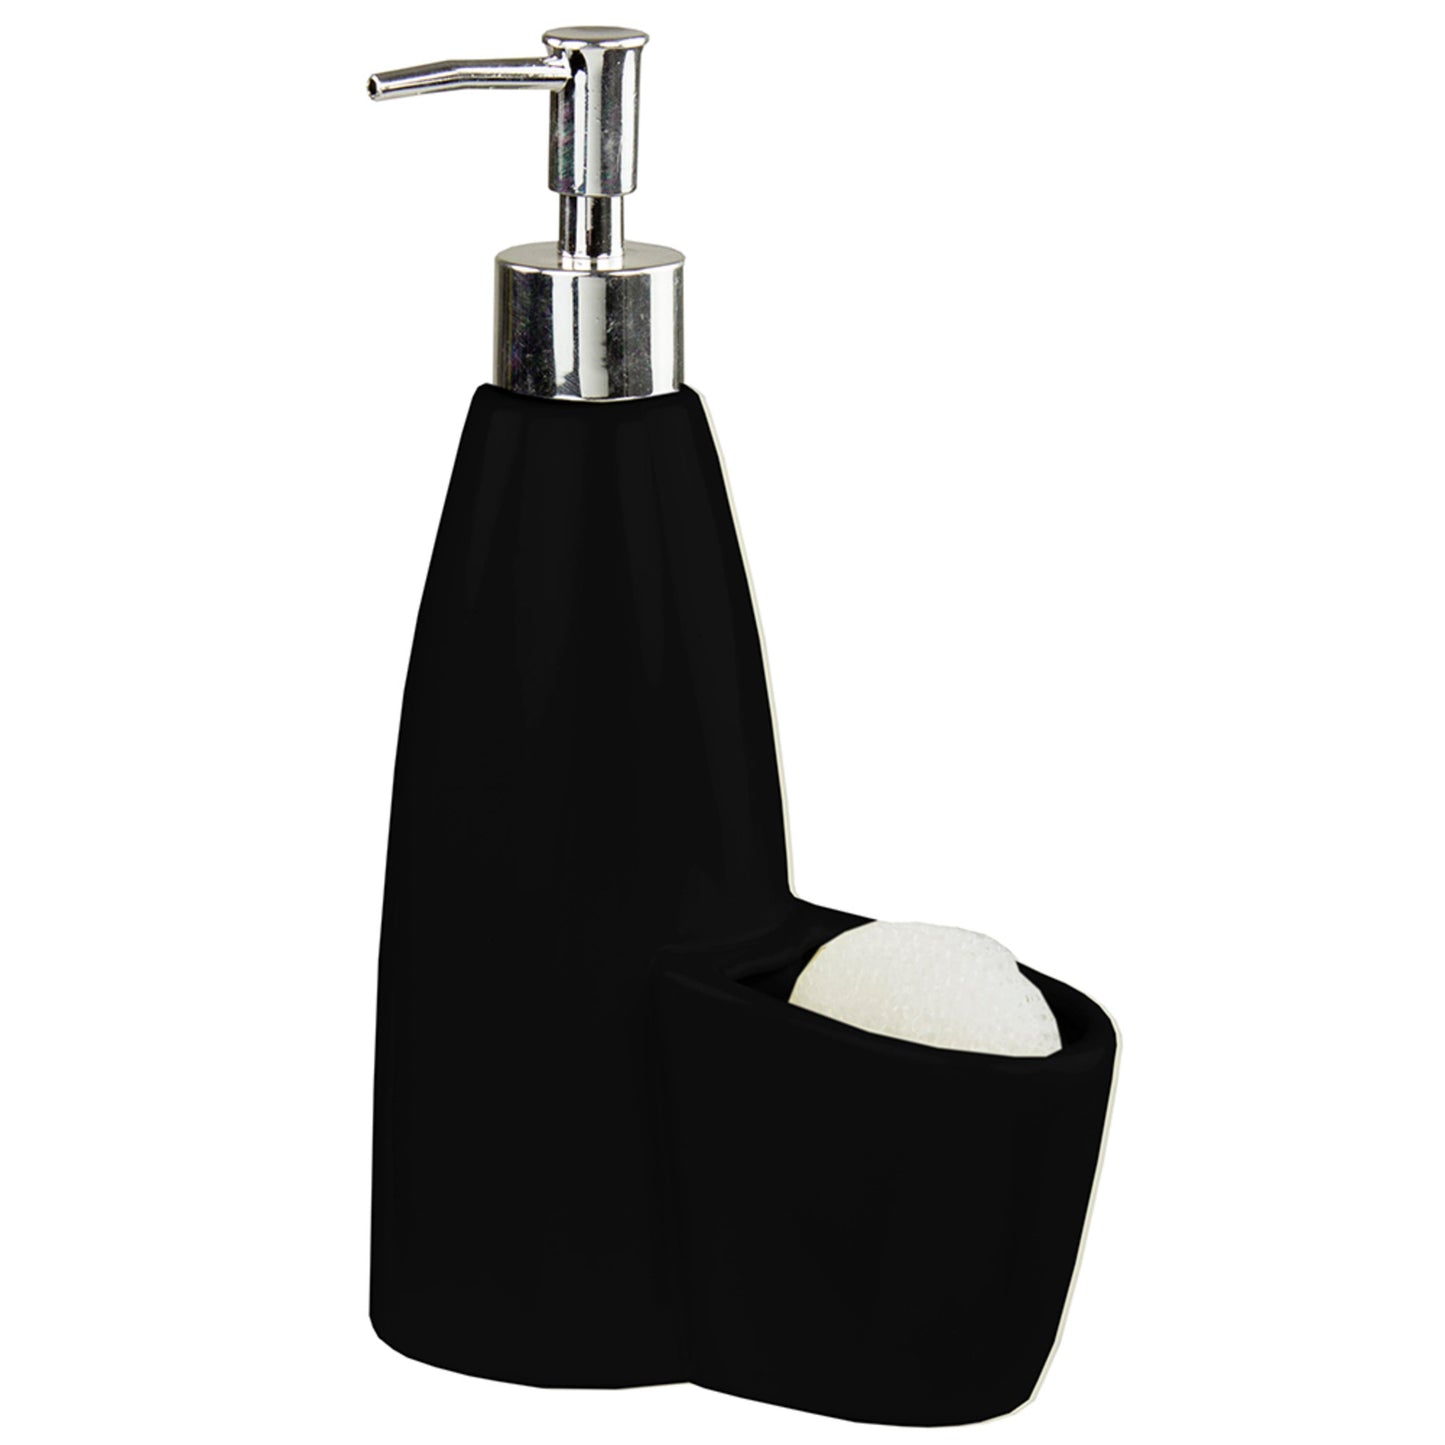 Home Basics Tall Ceramic Soap Dispenser with Sponge - Black